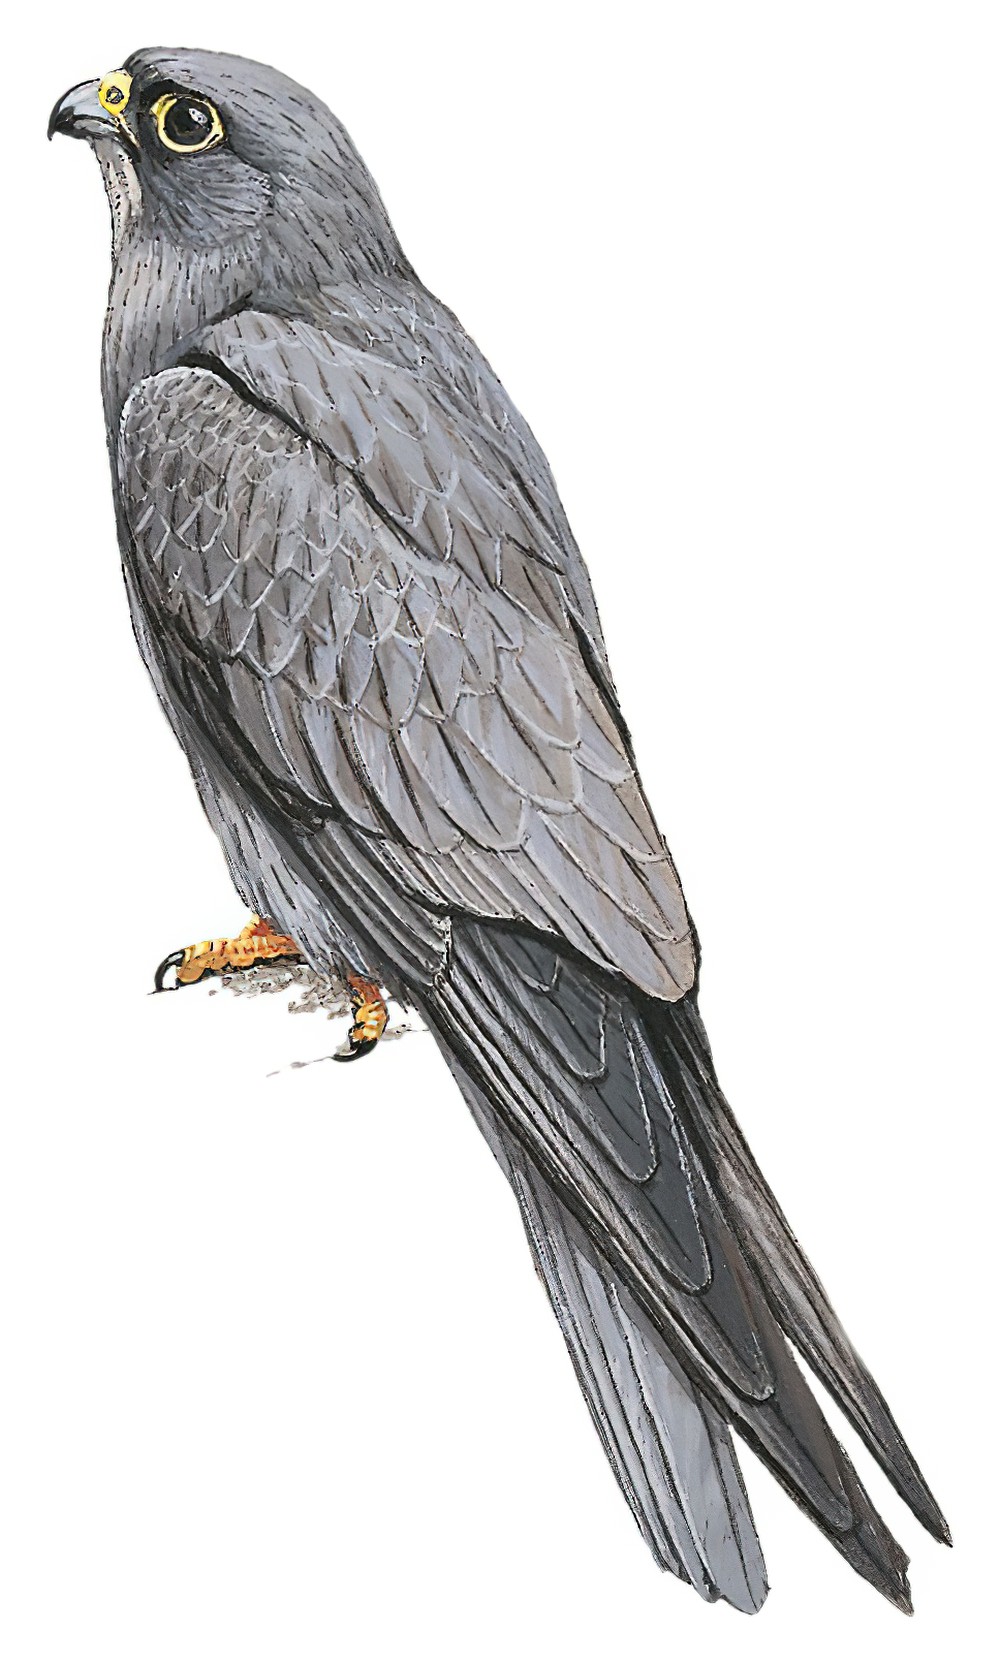 Sooty Falcon / Falco concolor